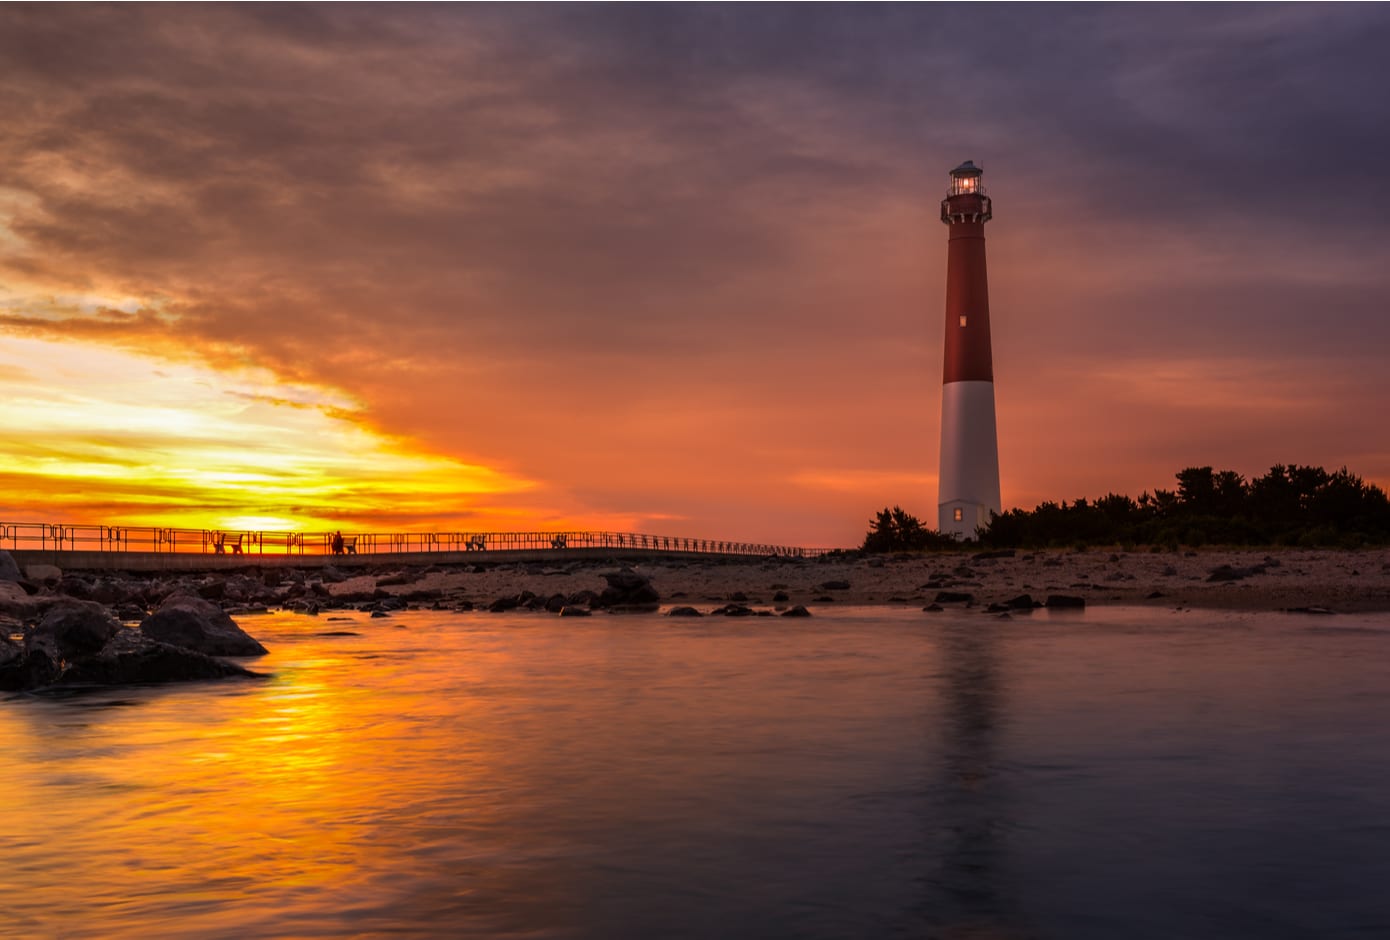 Barnegat Lighthouse at sunset. 